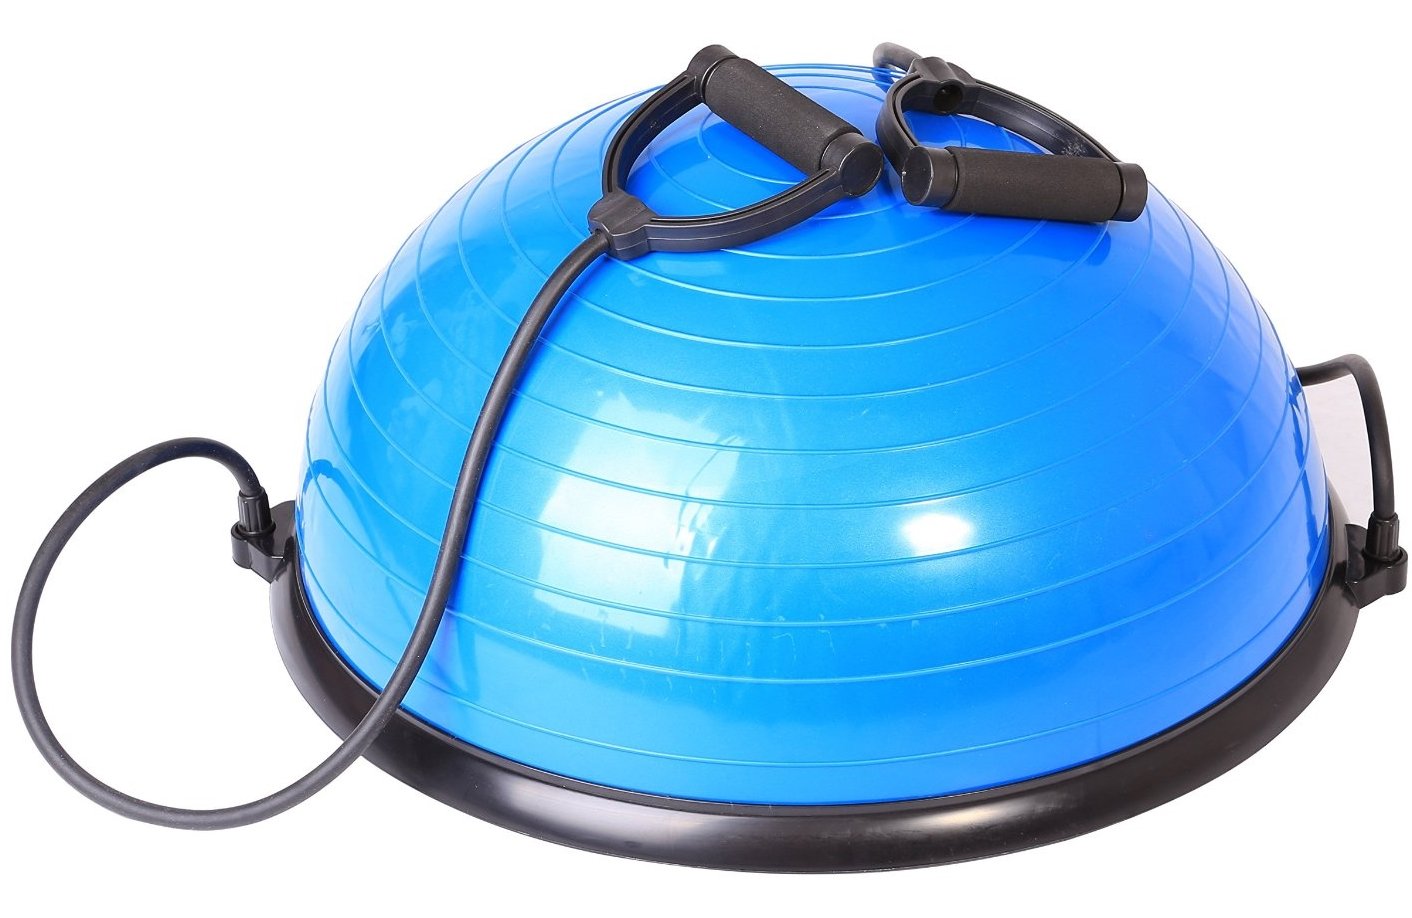 SportPlus Balance Ball Halbkugel inkl. Traningsbänder, ca. 62 cm Durchmesser, Balance Trainer für Gleichgewicht & Stabilität, Nutzergewicht bis 120 kg, SP-GB-001